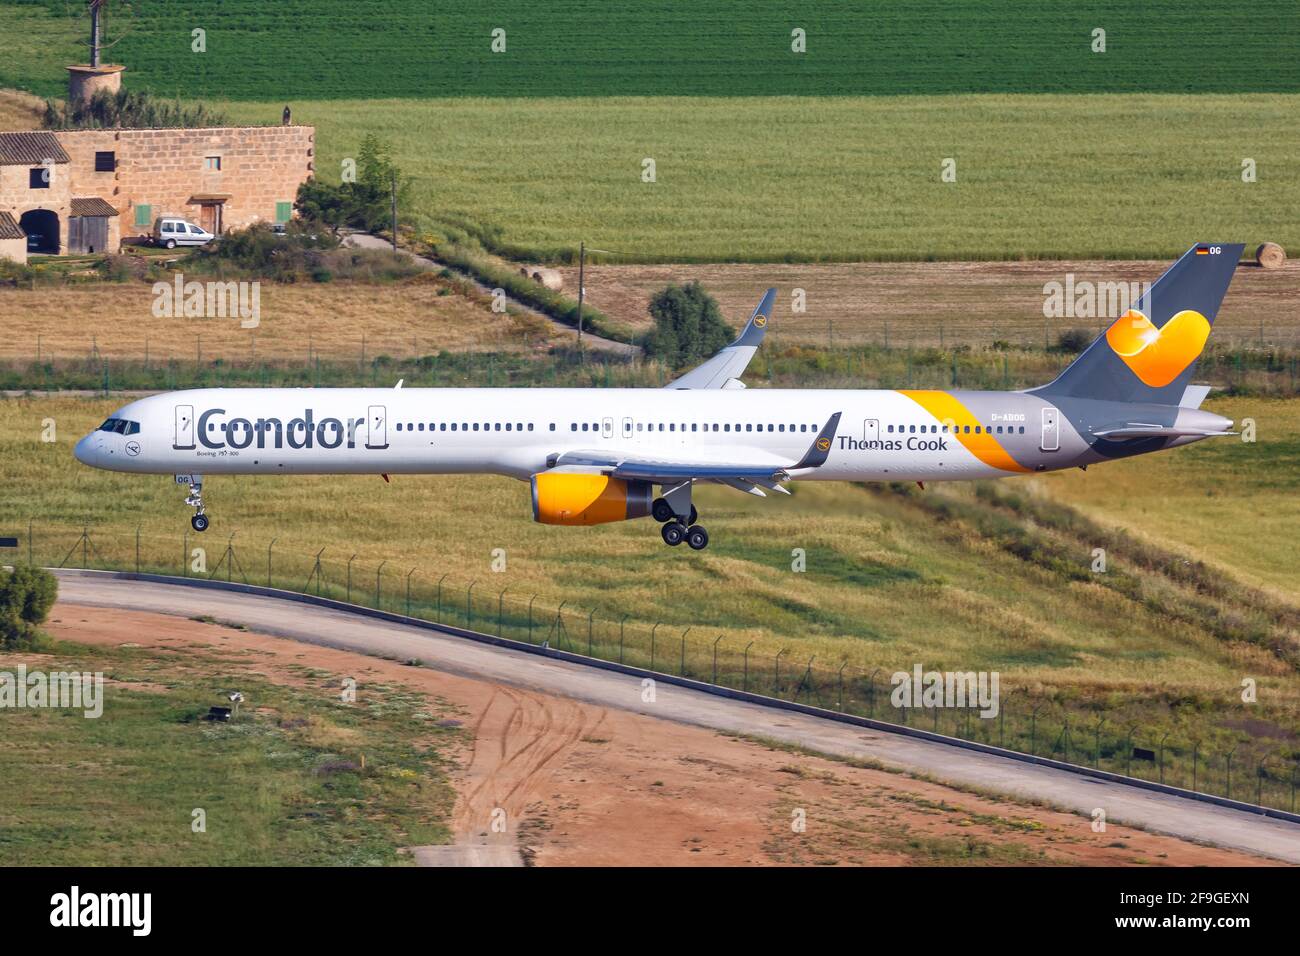 Palma de Mallorca, Spain - May 11, 2018: Condor Boeing 757 airplane at Palma de Mallorca Airport (PMI) in Spain. Boeing is an aircraft manufacturer ba Stock Photo